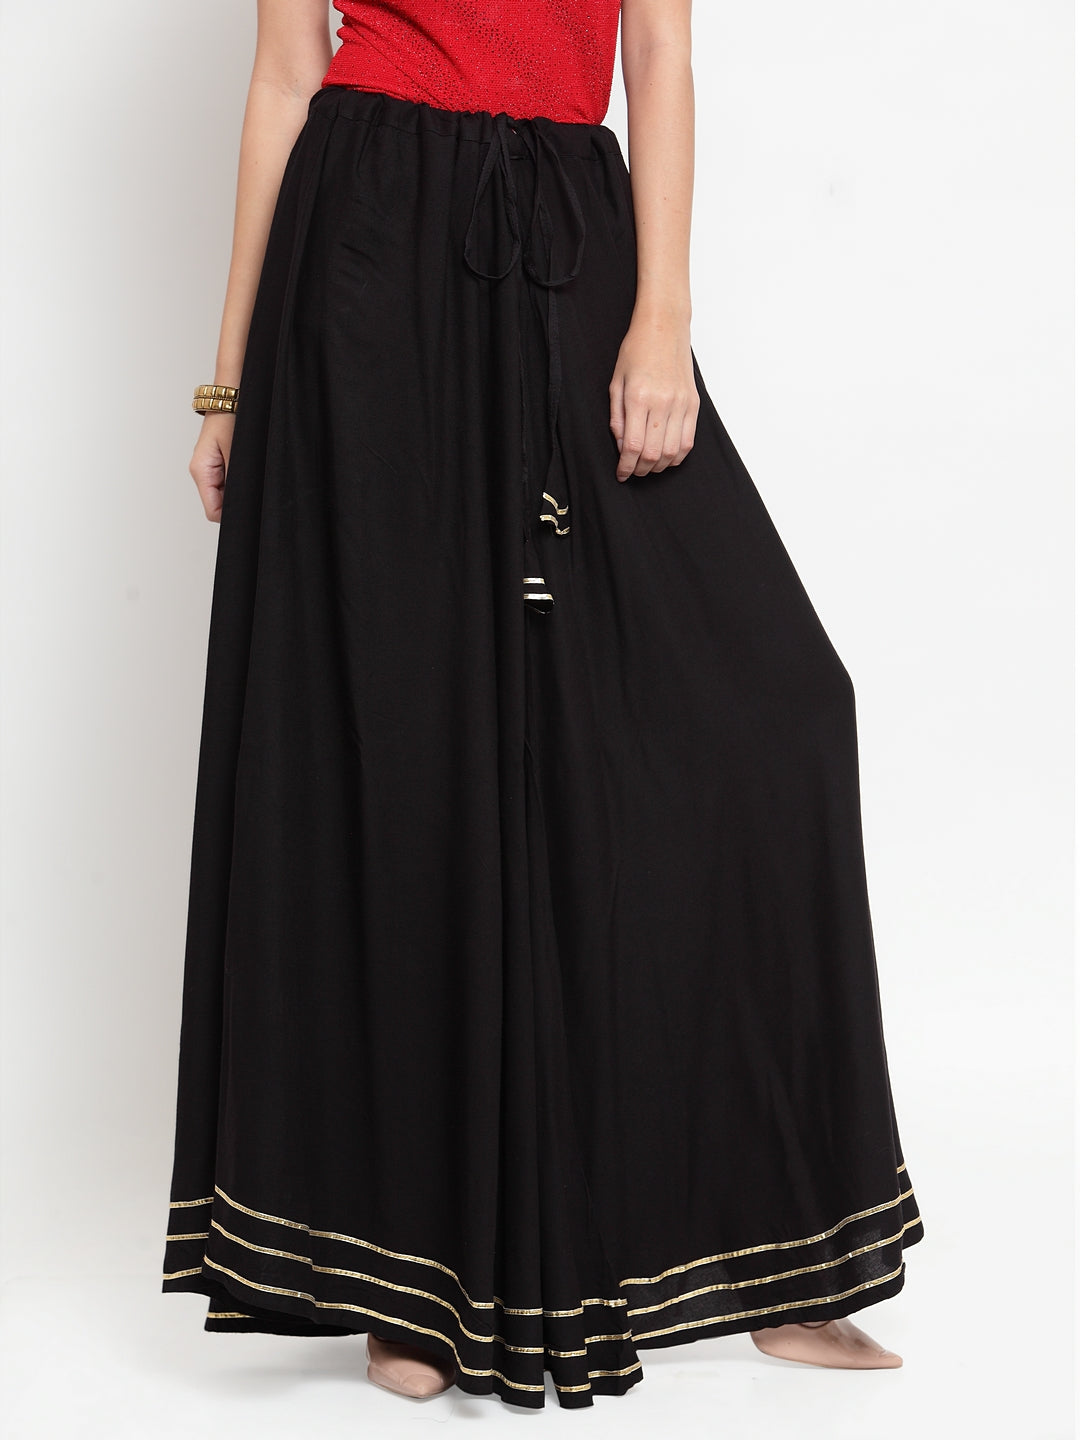 Clora Black Gotta Patti Solid Rayon Skirt